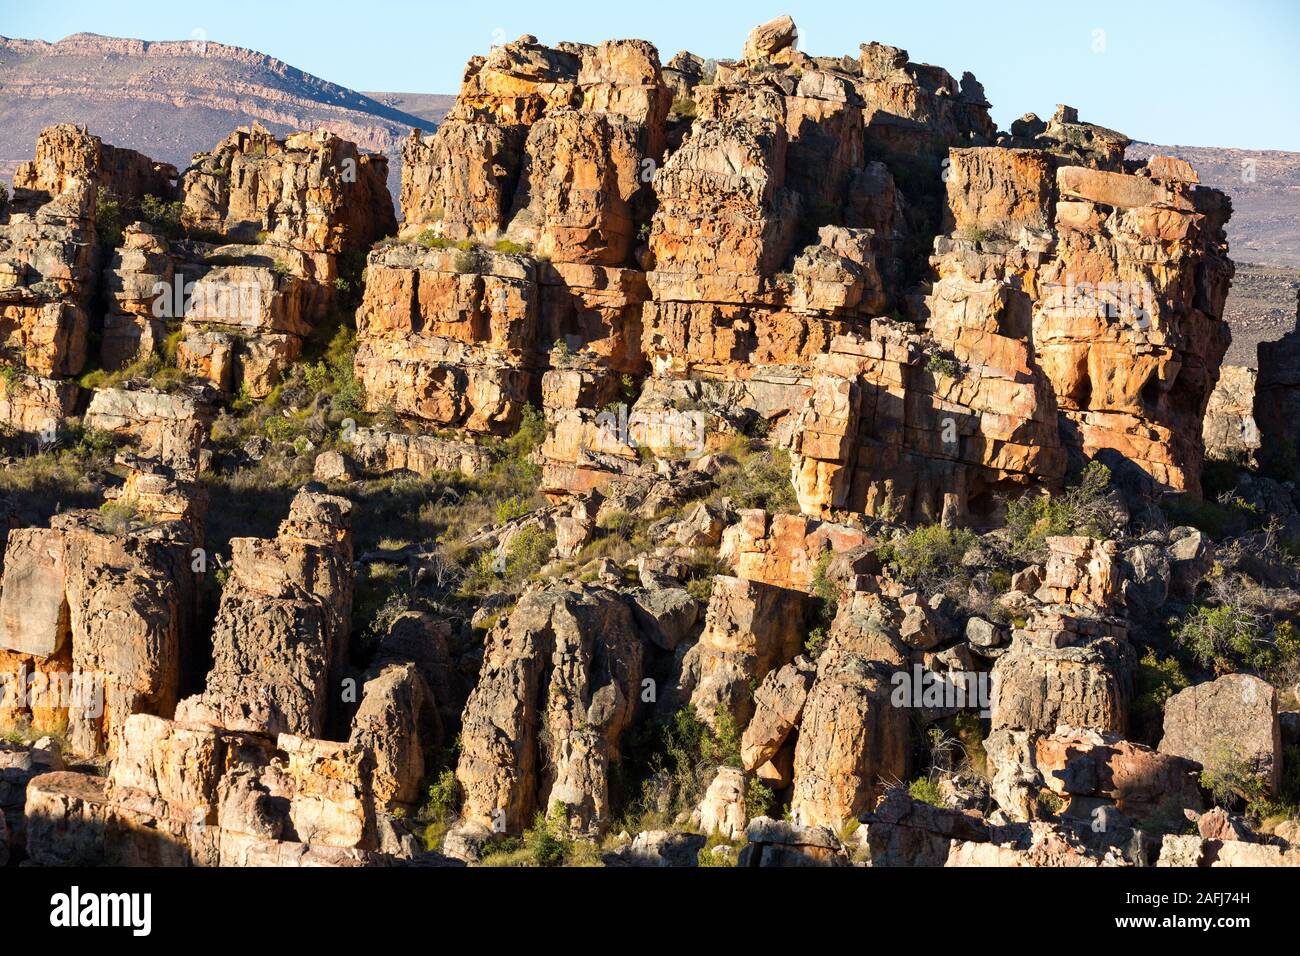 Paysage typique avec les étranges formations rocheuses à Cederberg Wilderness Area, Afrique du Sud Banque D'Images